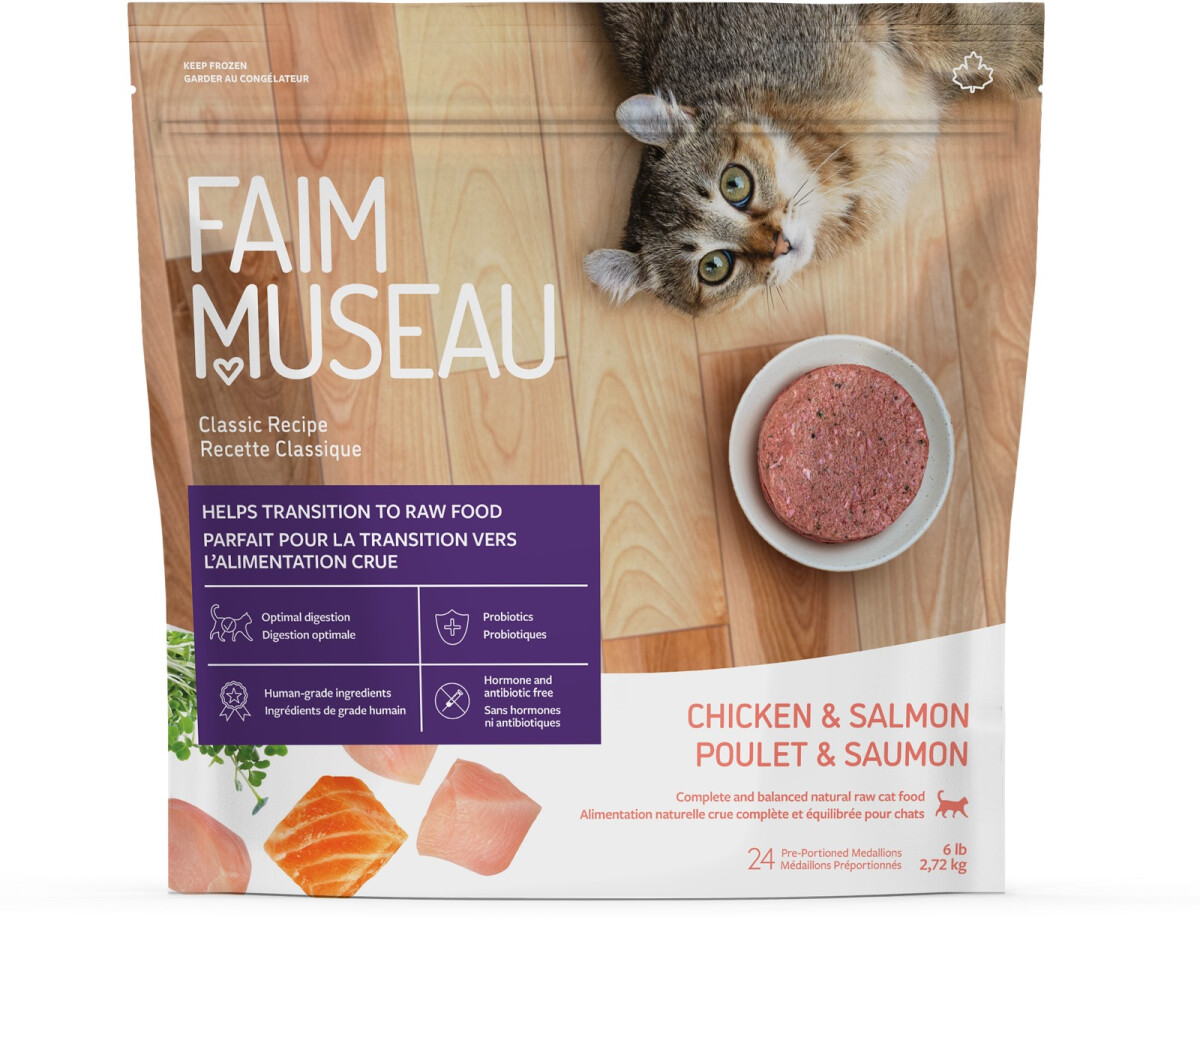 Fm306 - Nourriture crue recette classique poulet & saumon pour chats - Faim Museau